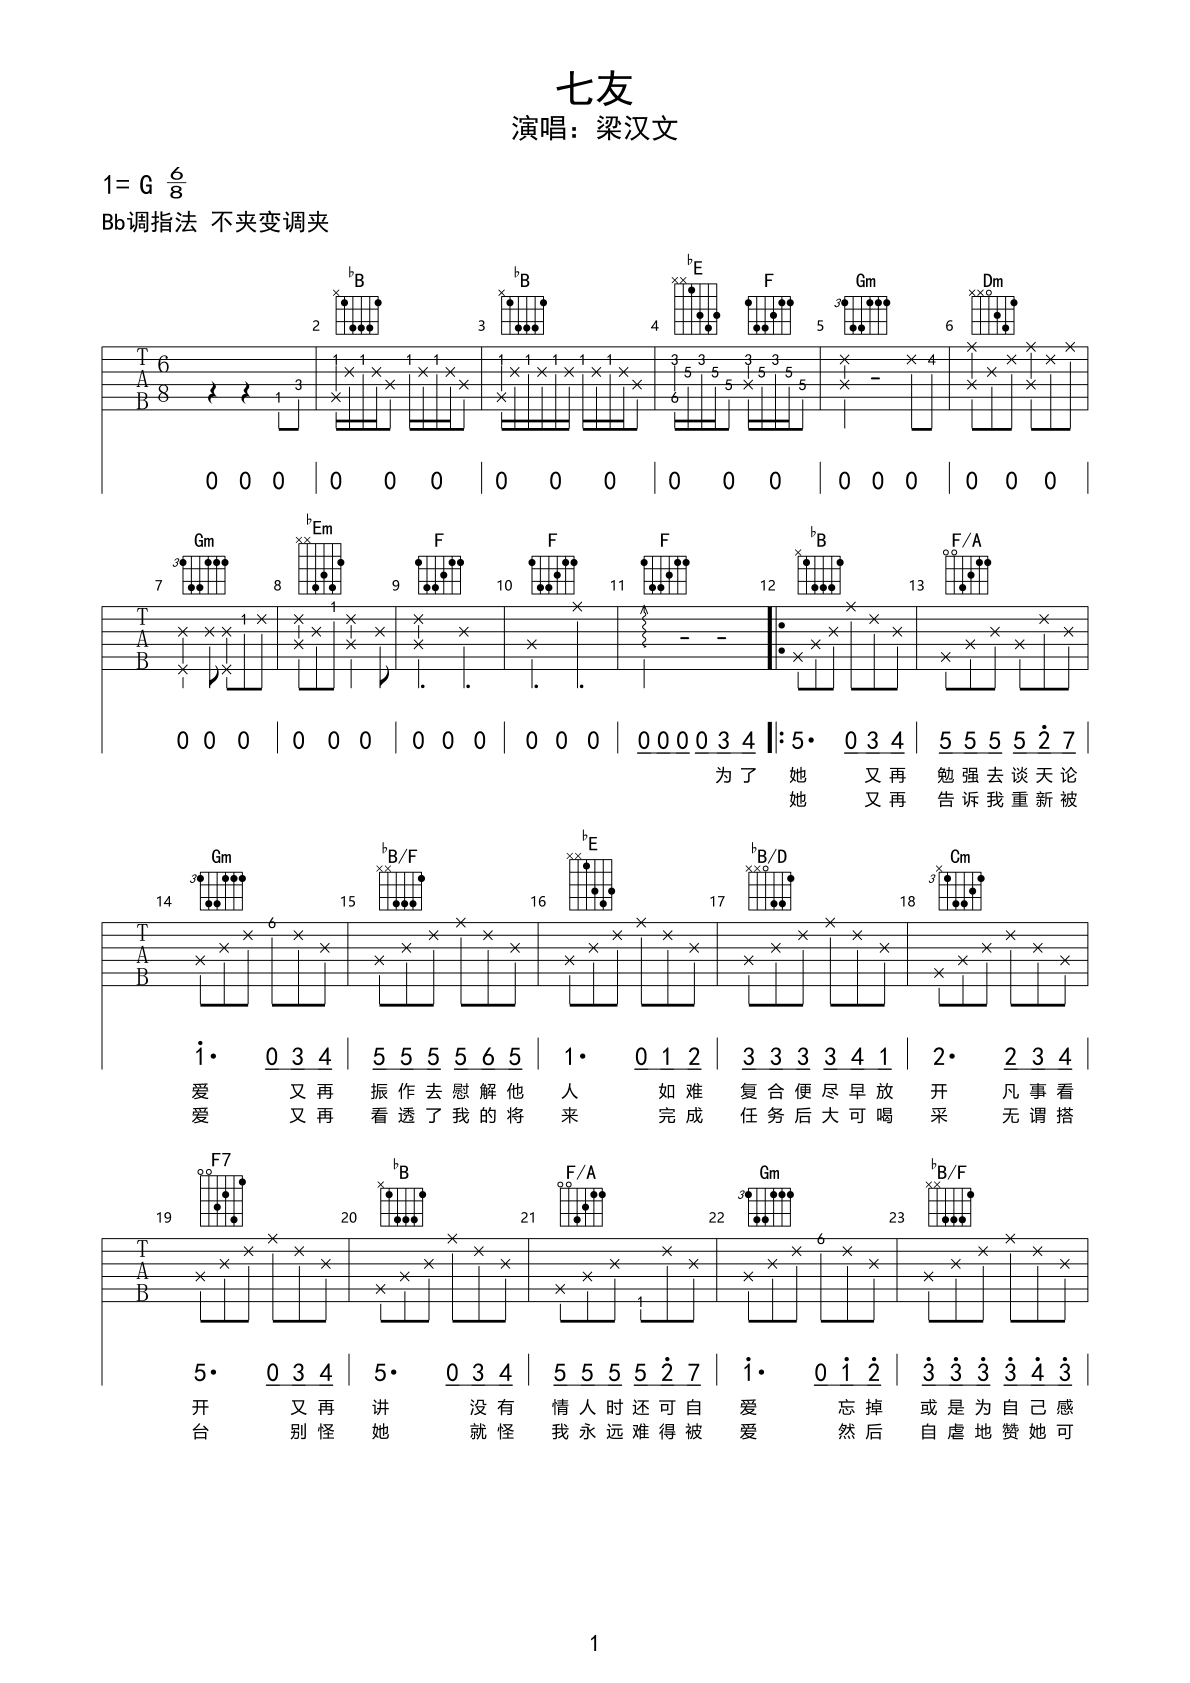 吉他和弦编配步骤与方法，歌曲《送别》入门编配详细分析